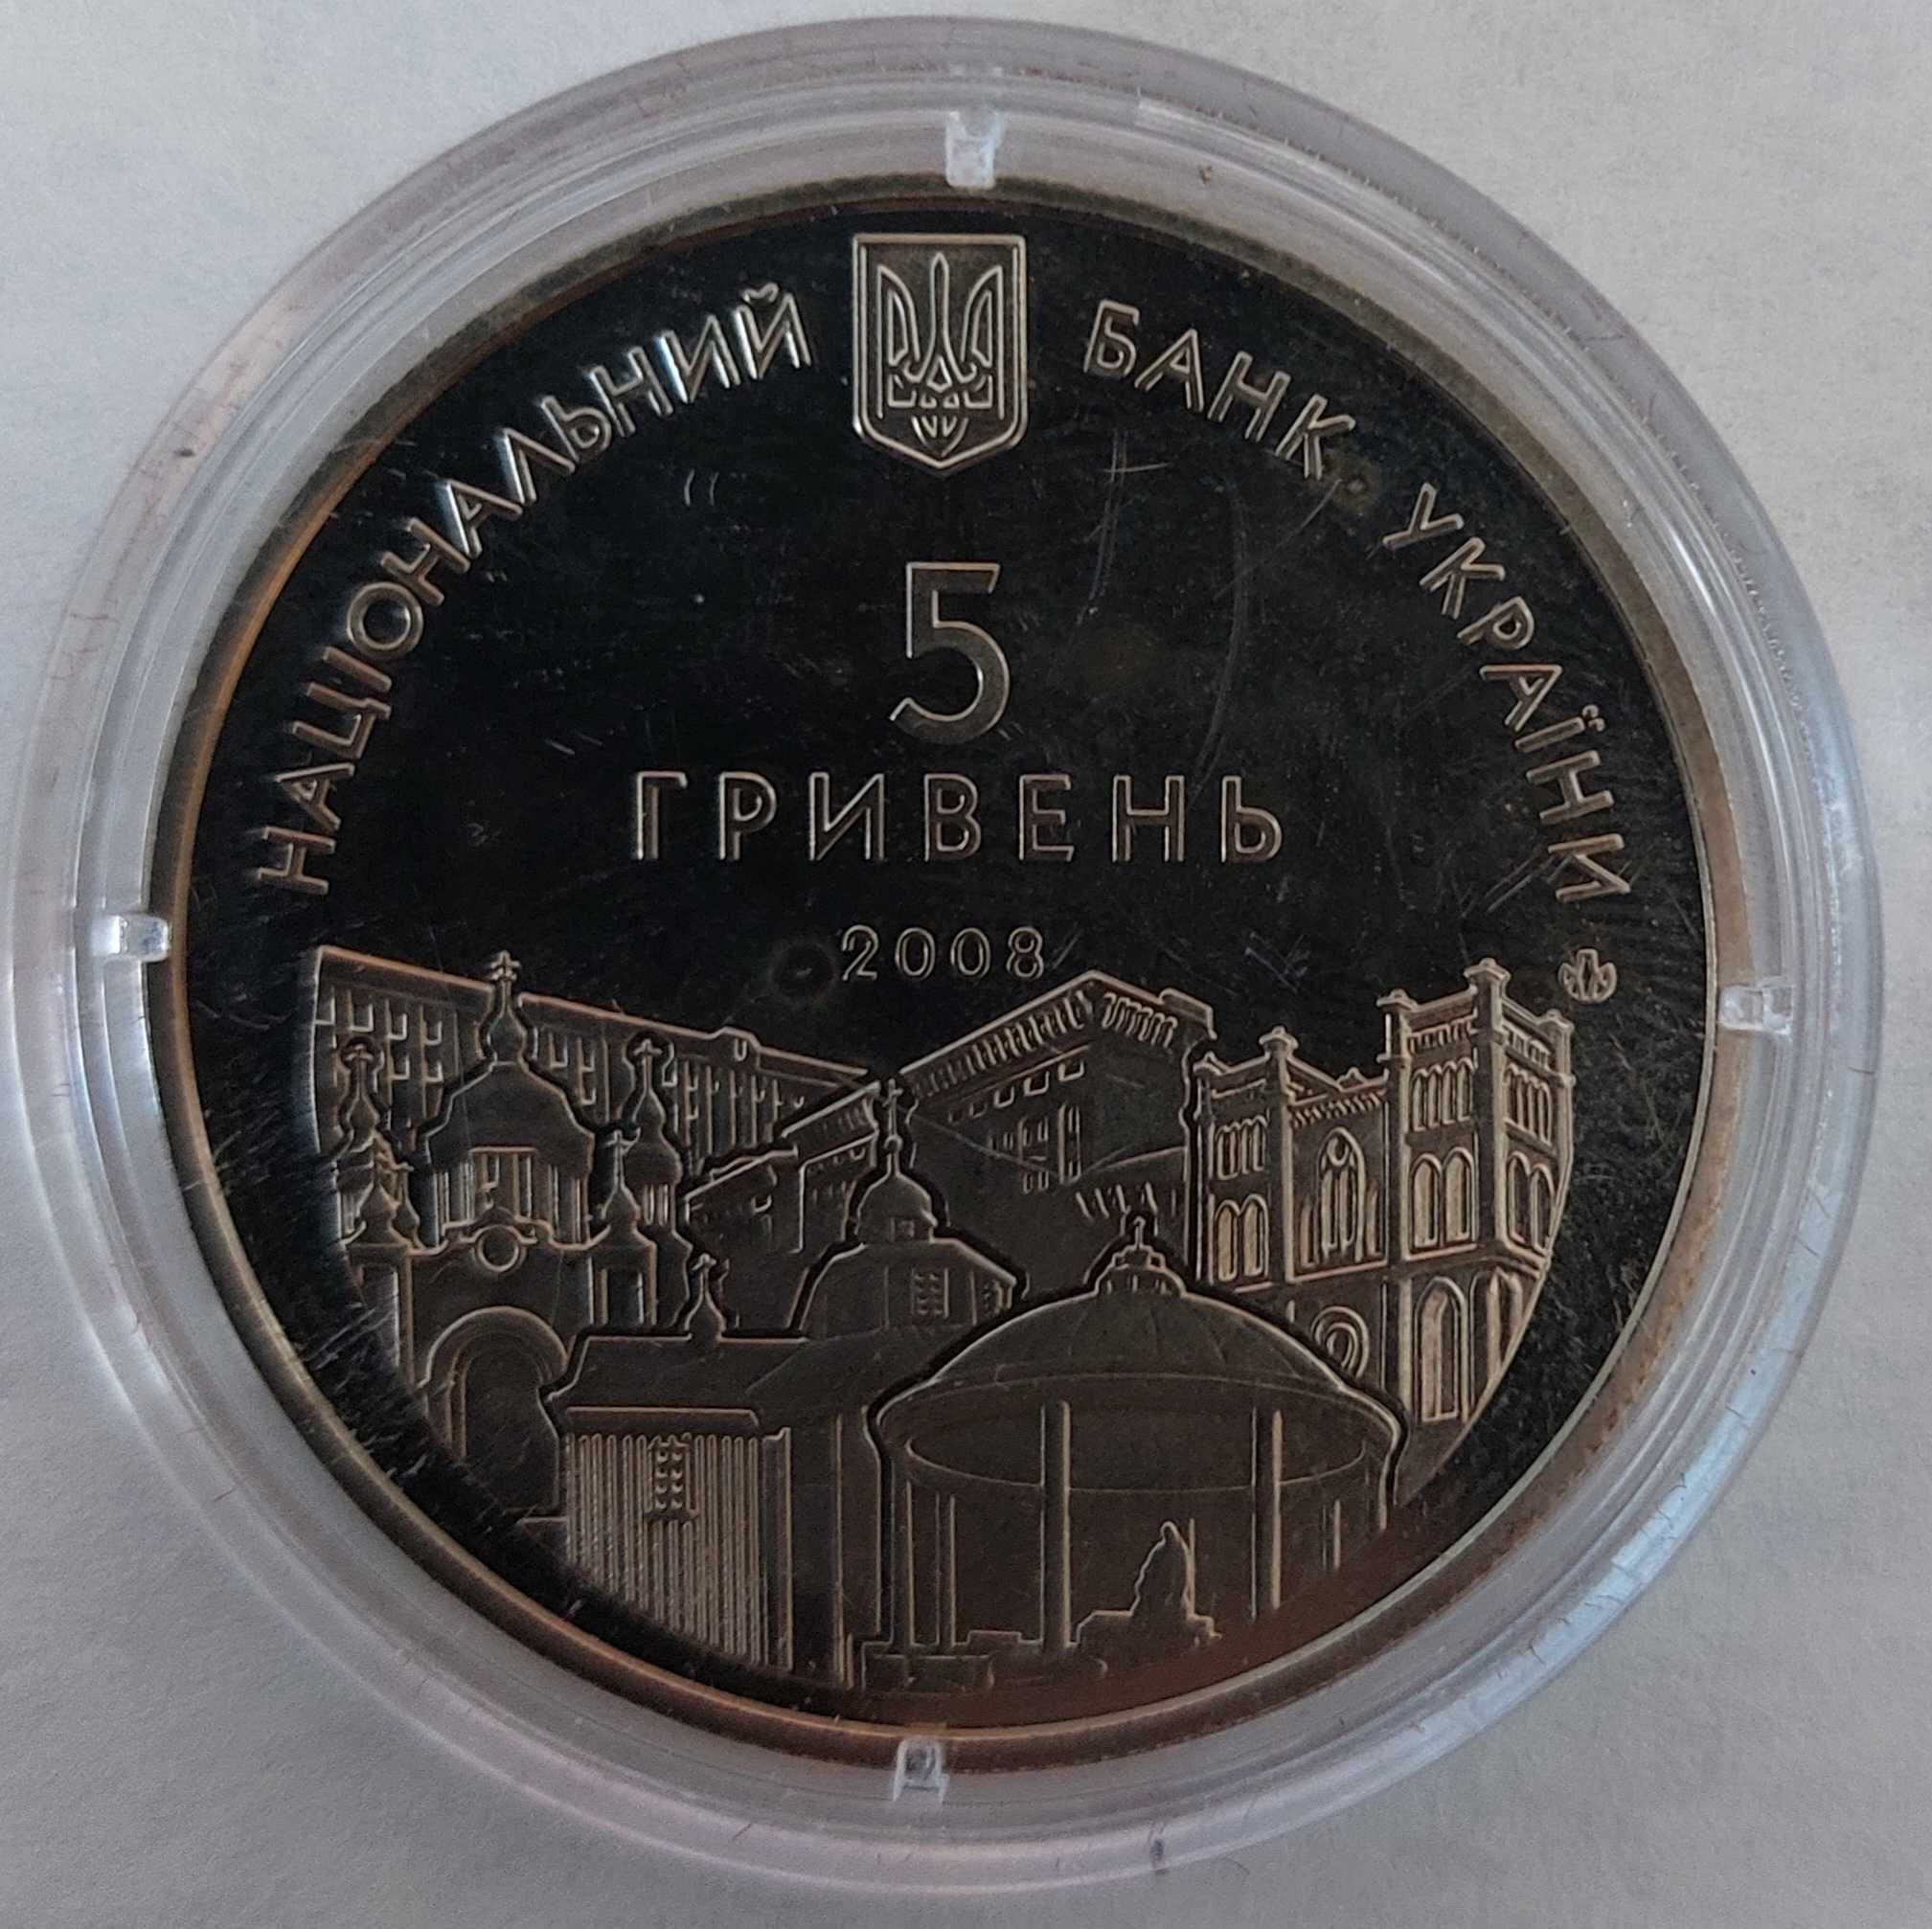 Ювілейна монета НБУ Рівне 725 років 2008 року випуску